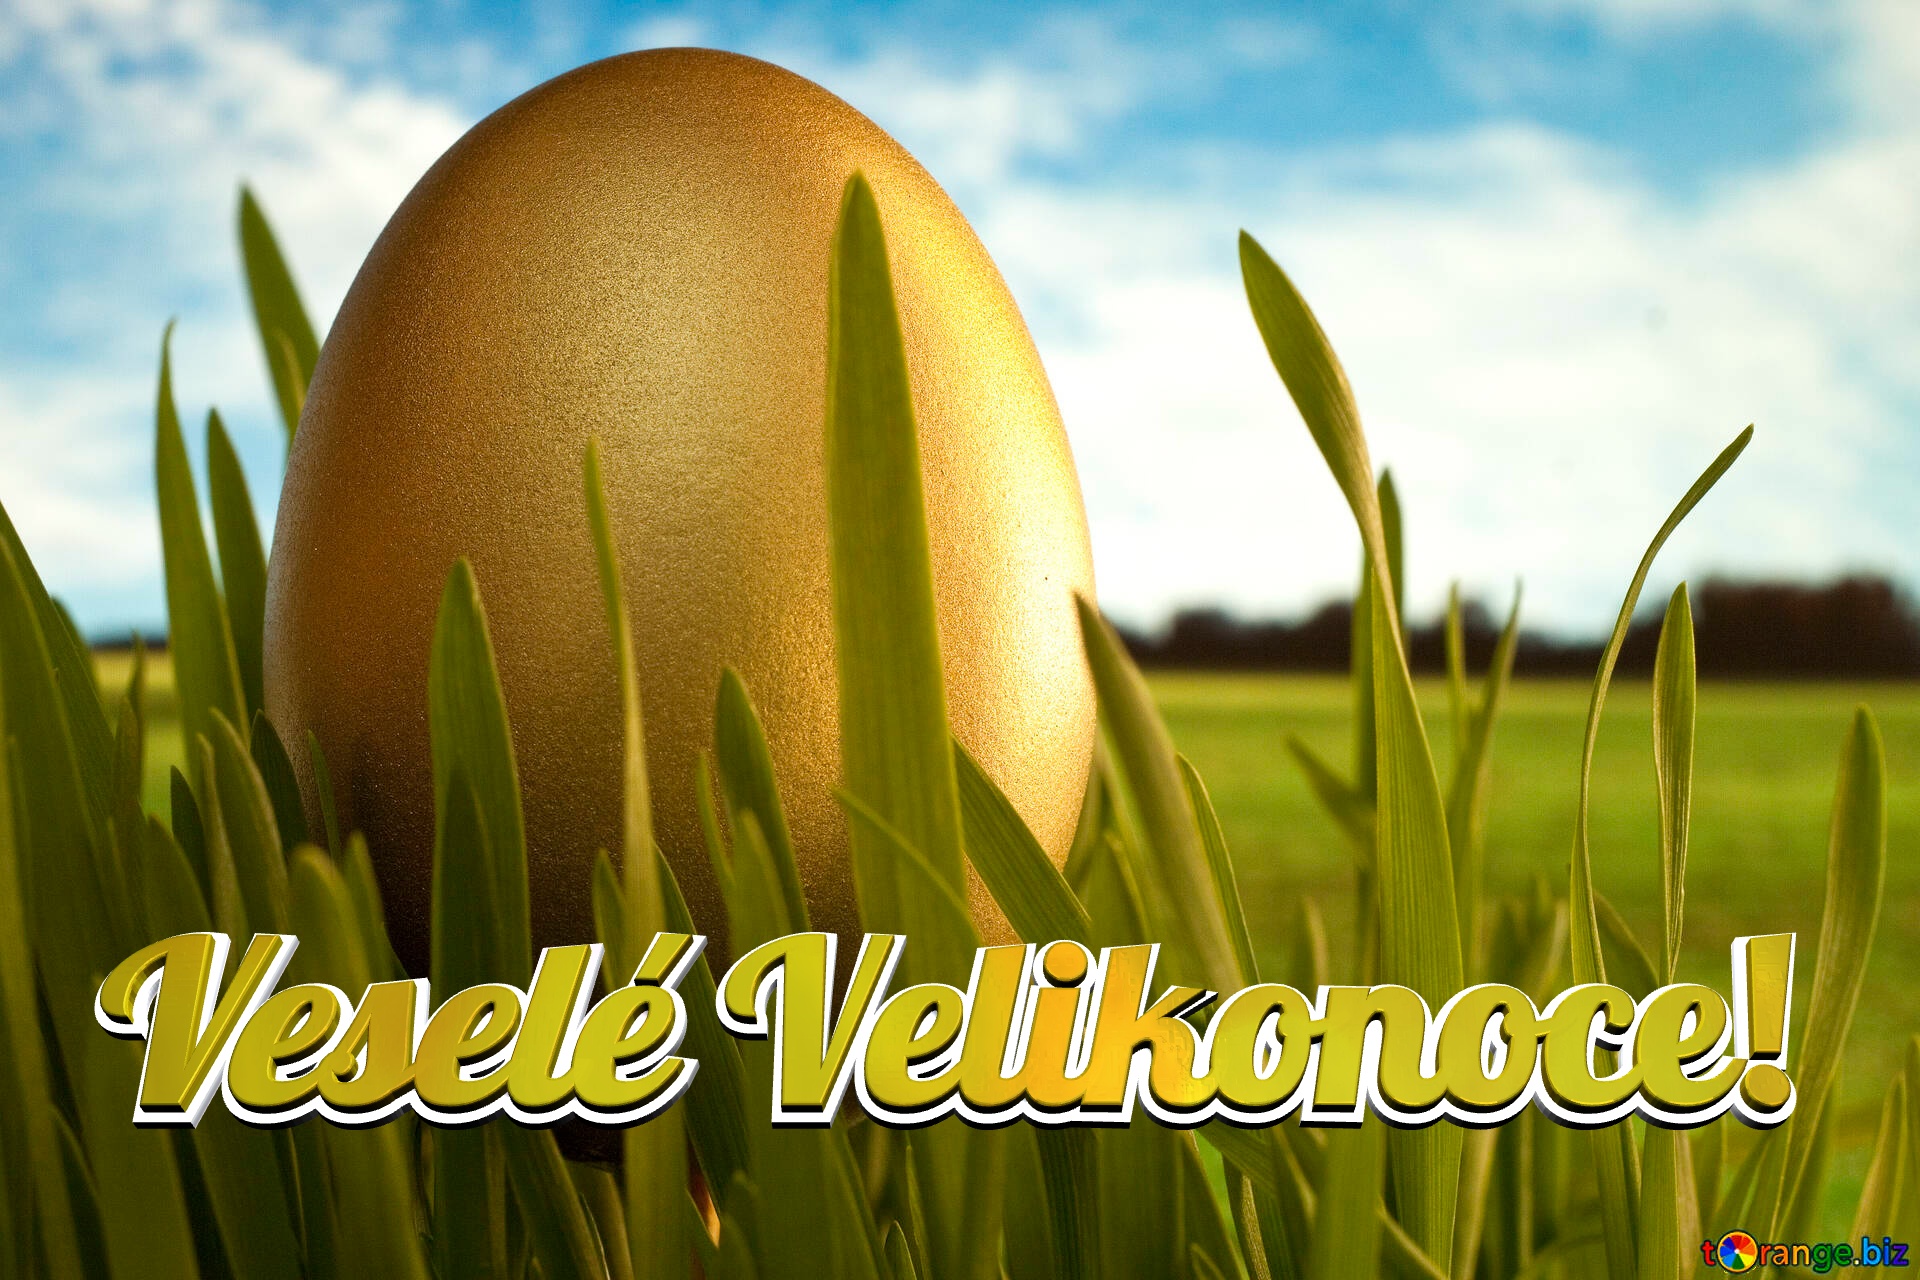 Veselé Velikonoce!  Gold  Egg   grass №8132